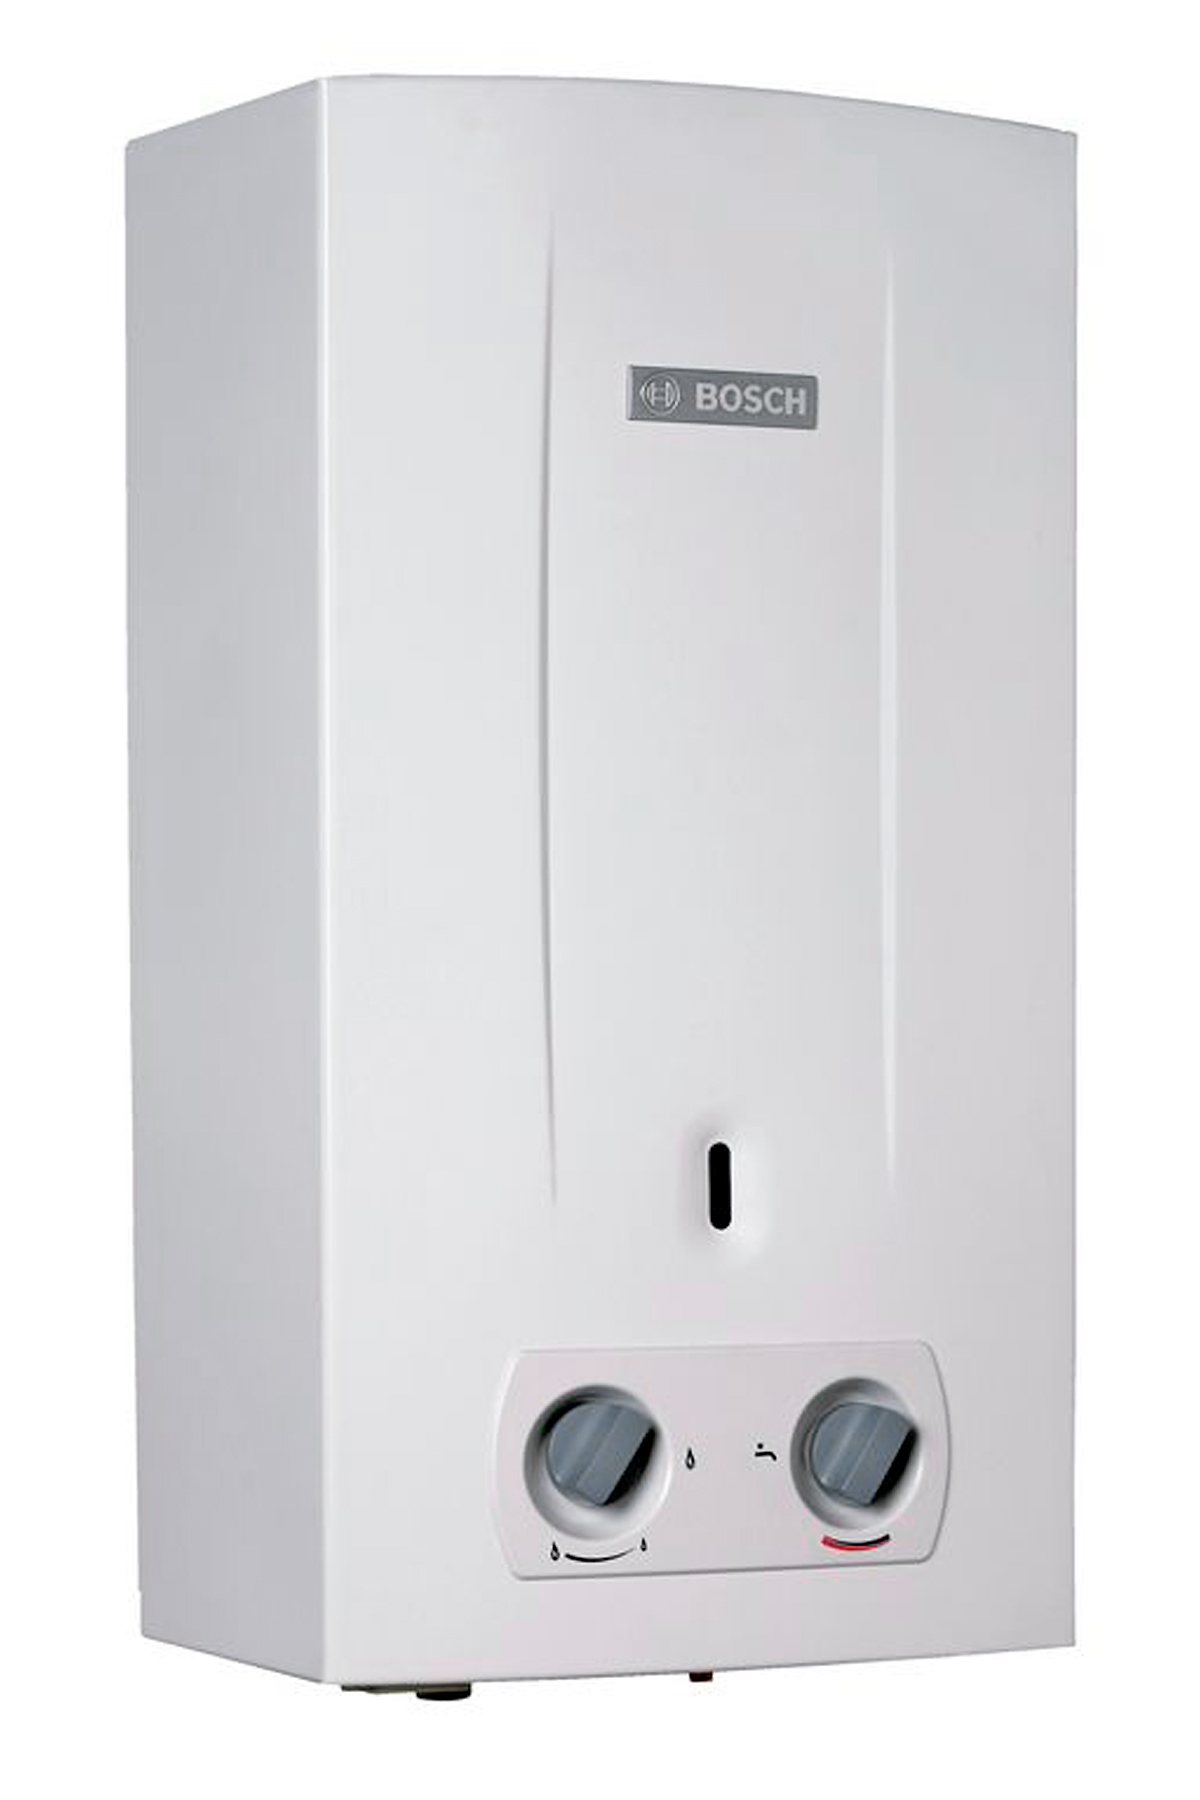 Купить газовая колонка с розжигом от батарейки Bosch Therm 2000 O W 10 KB (7736500992) в Киеве